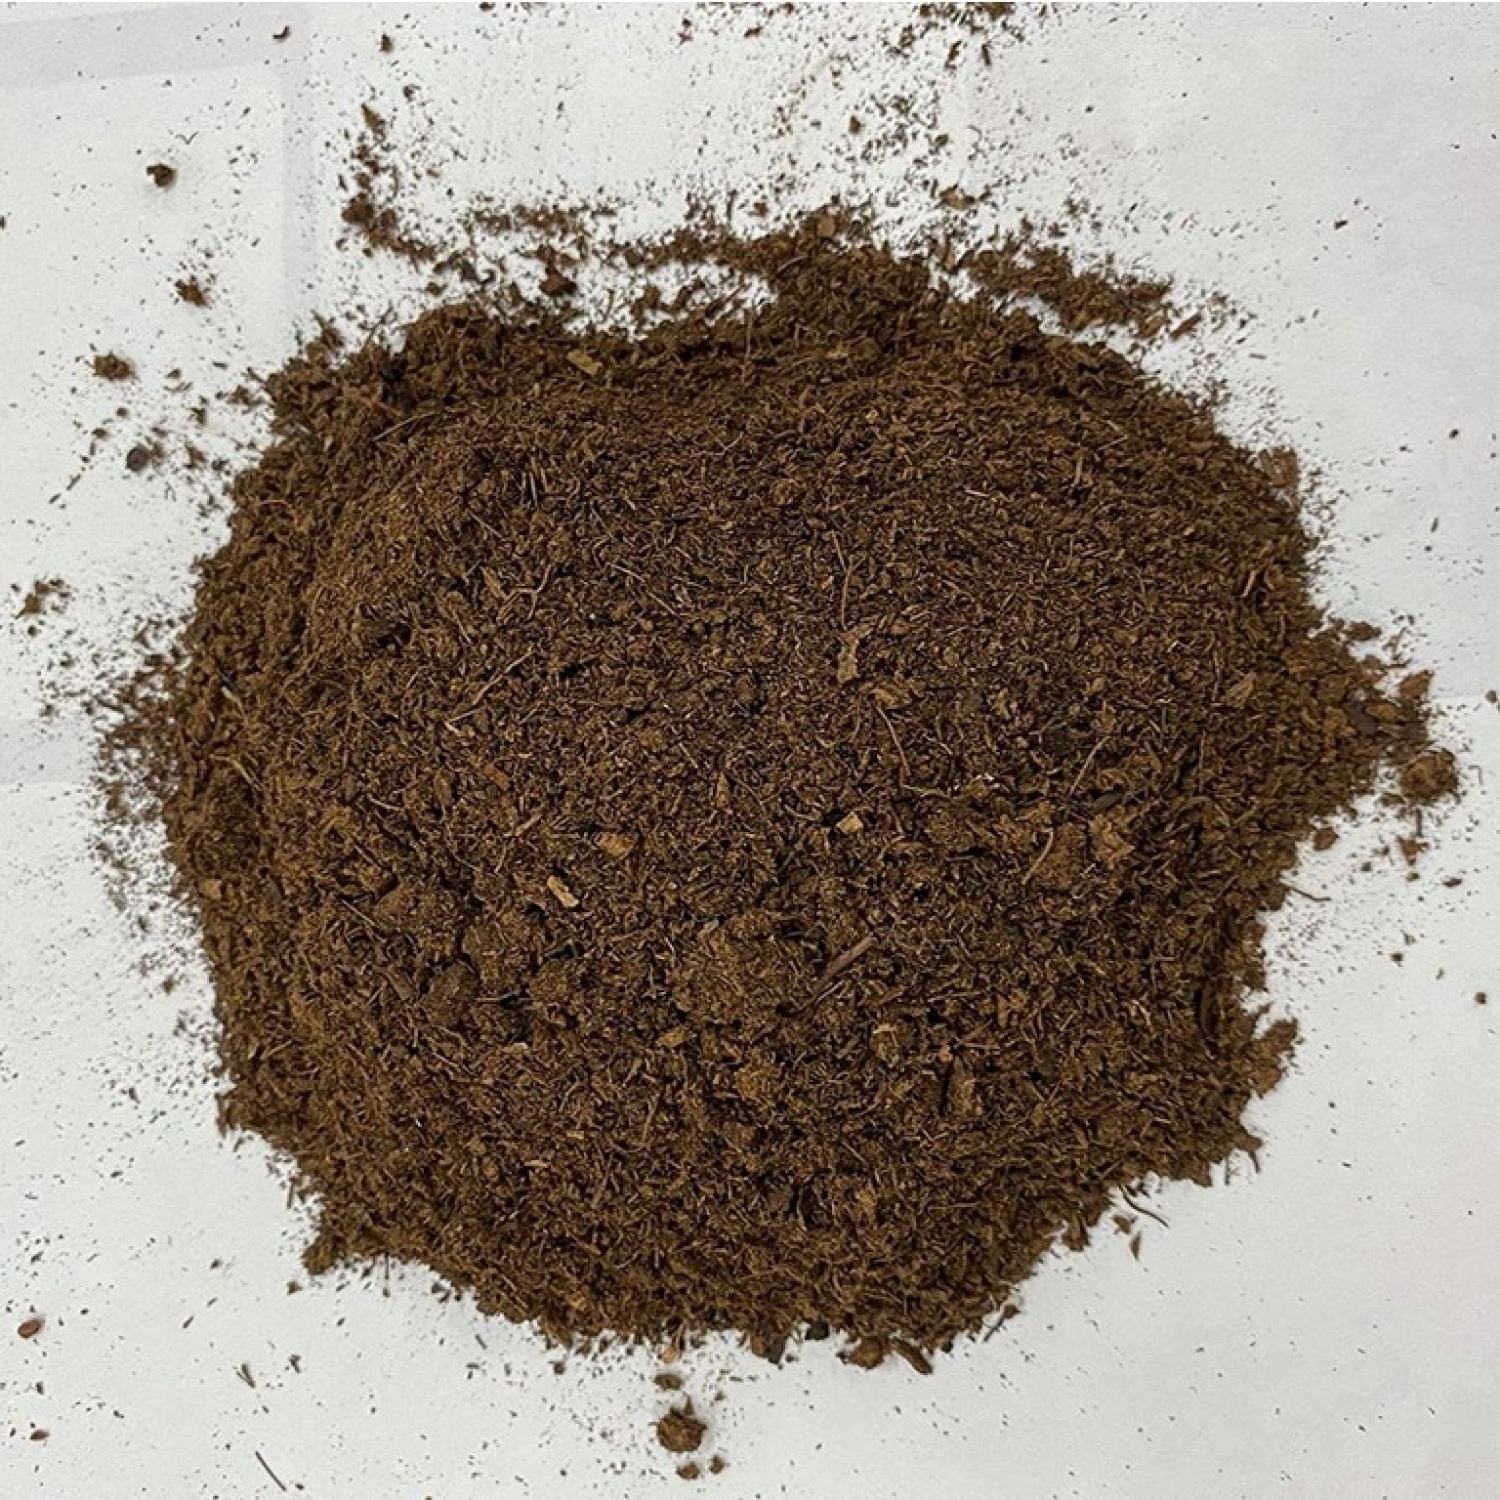 PEAT MOSS - Rêu Than Bùn - Giá thể hữu cơ ươm mầm, trộn đất trồng sen đá